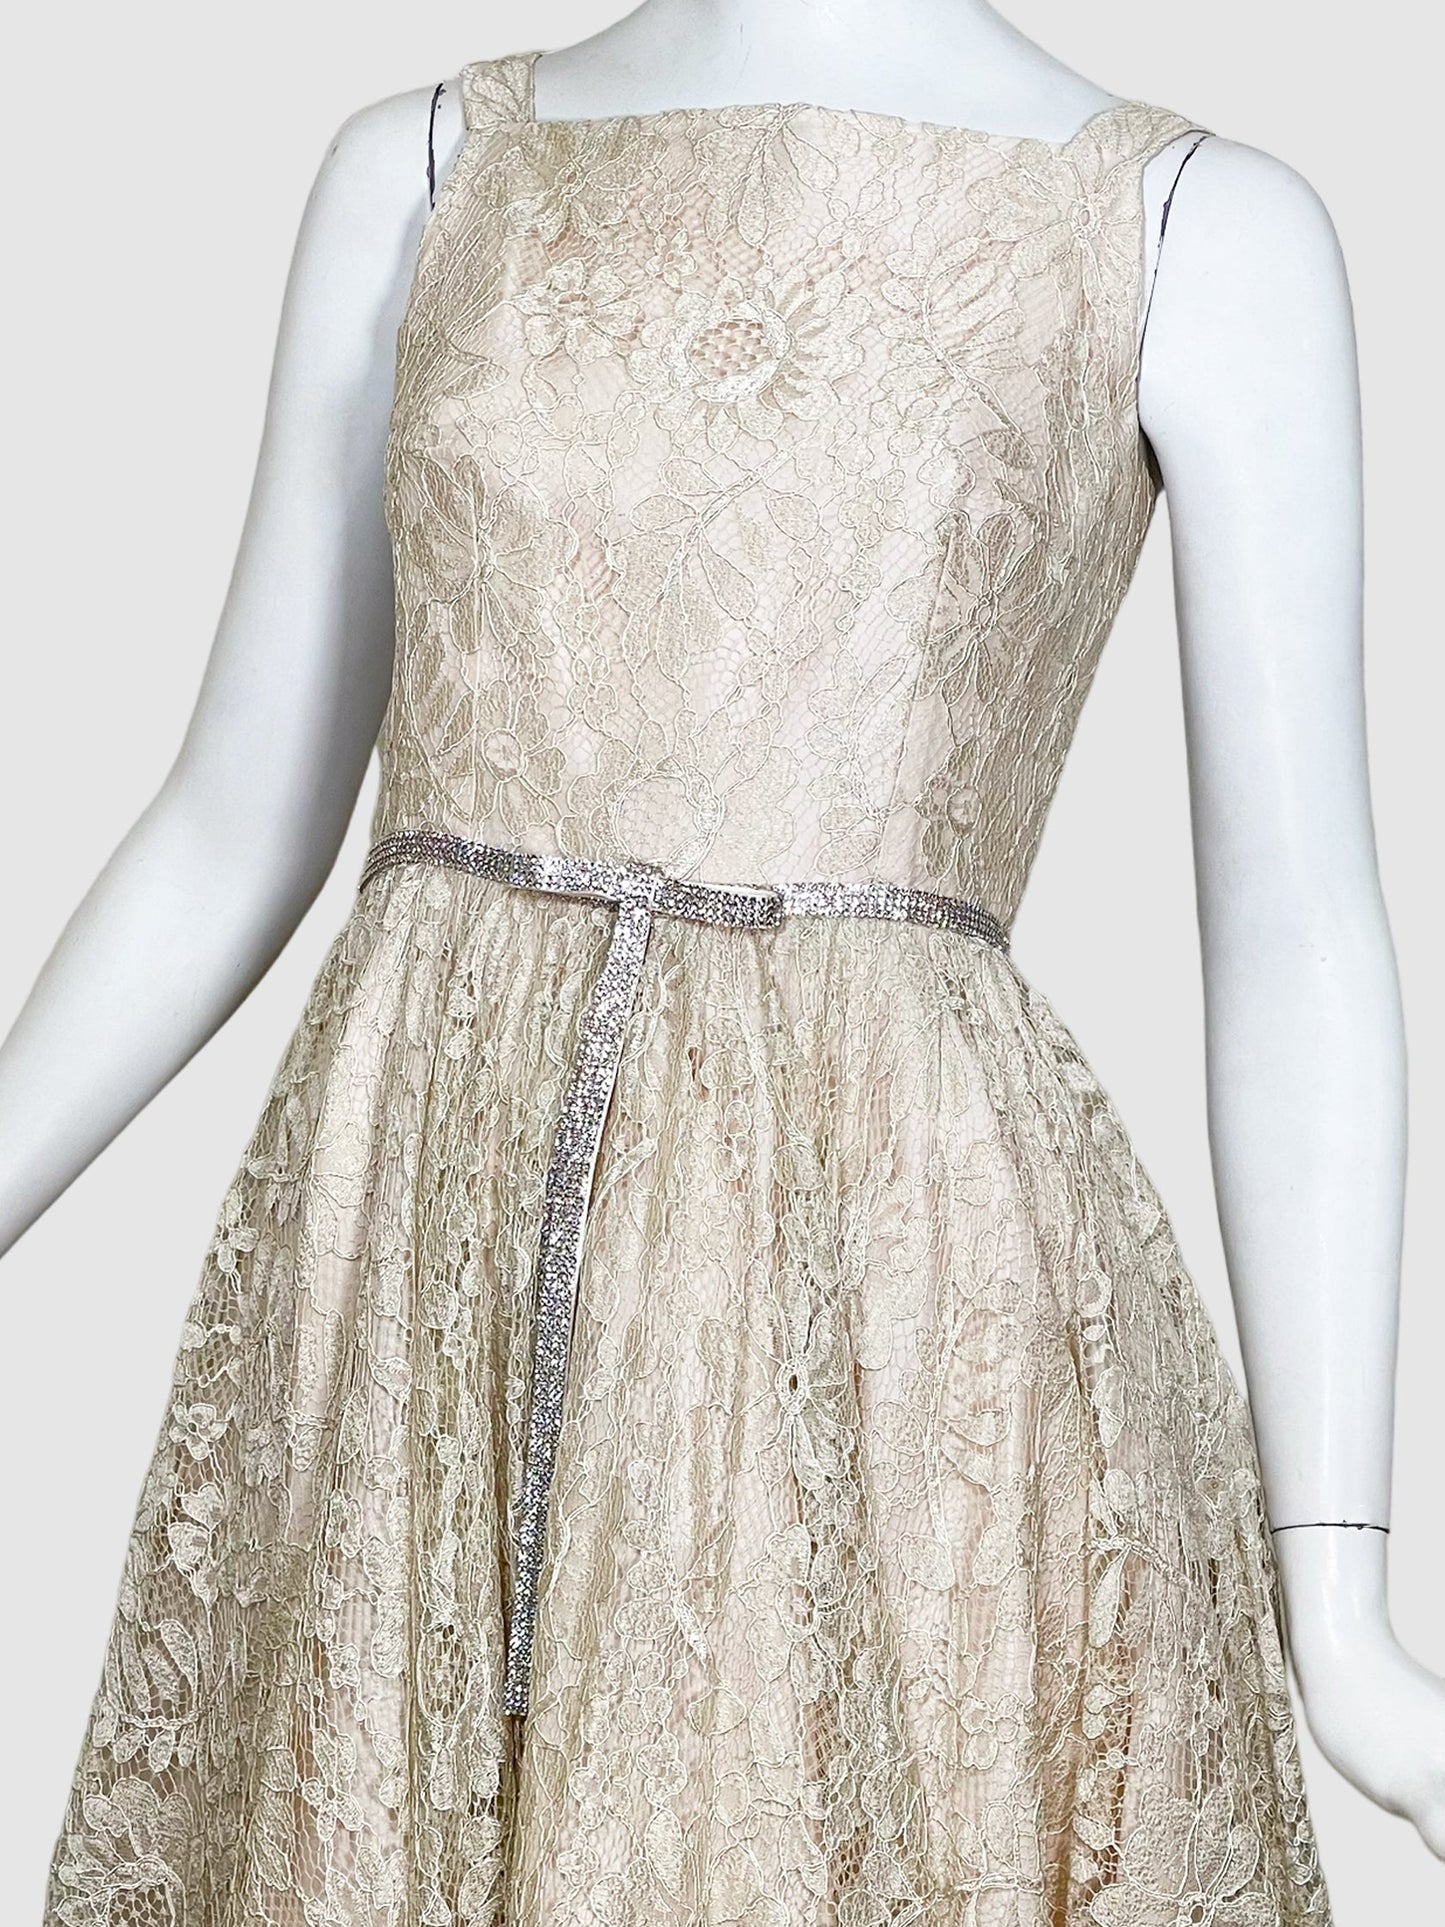 Dolce & Gabbana Lace Maxi Dress - Size 40